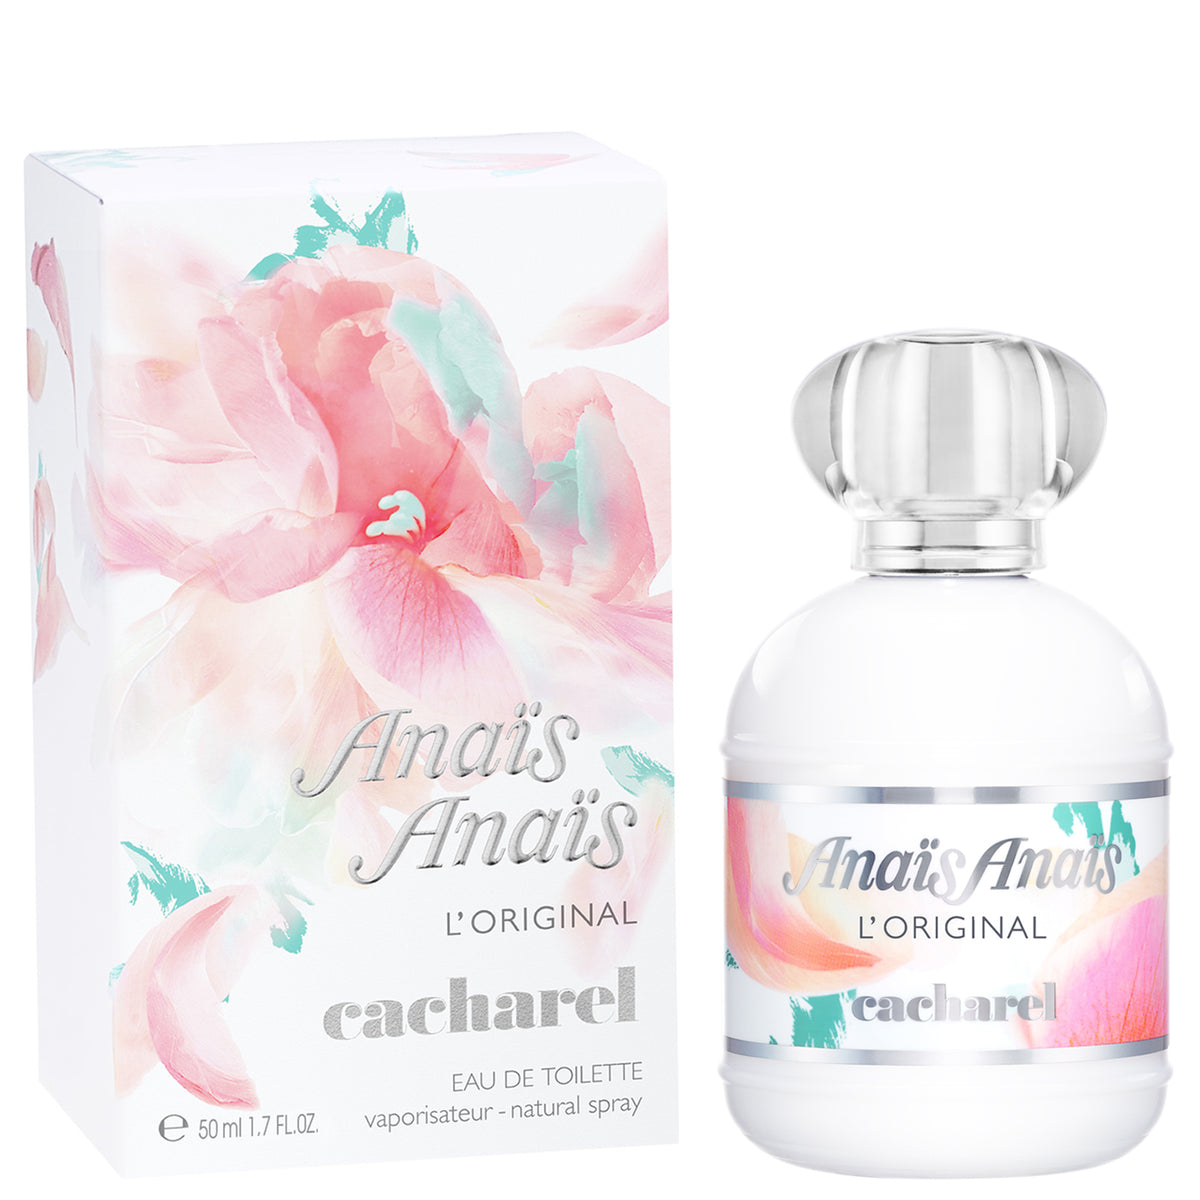 Anais Anais - Perfume Shop